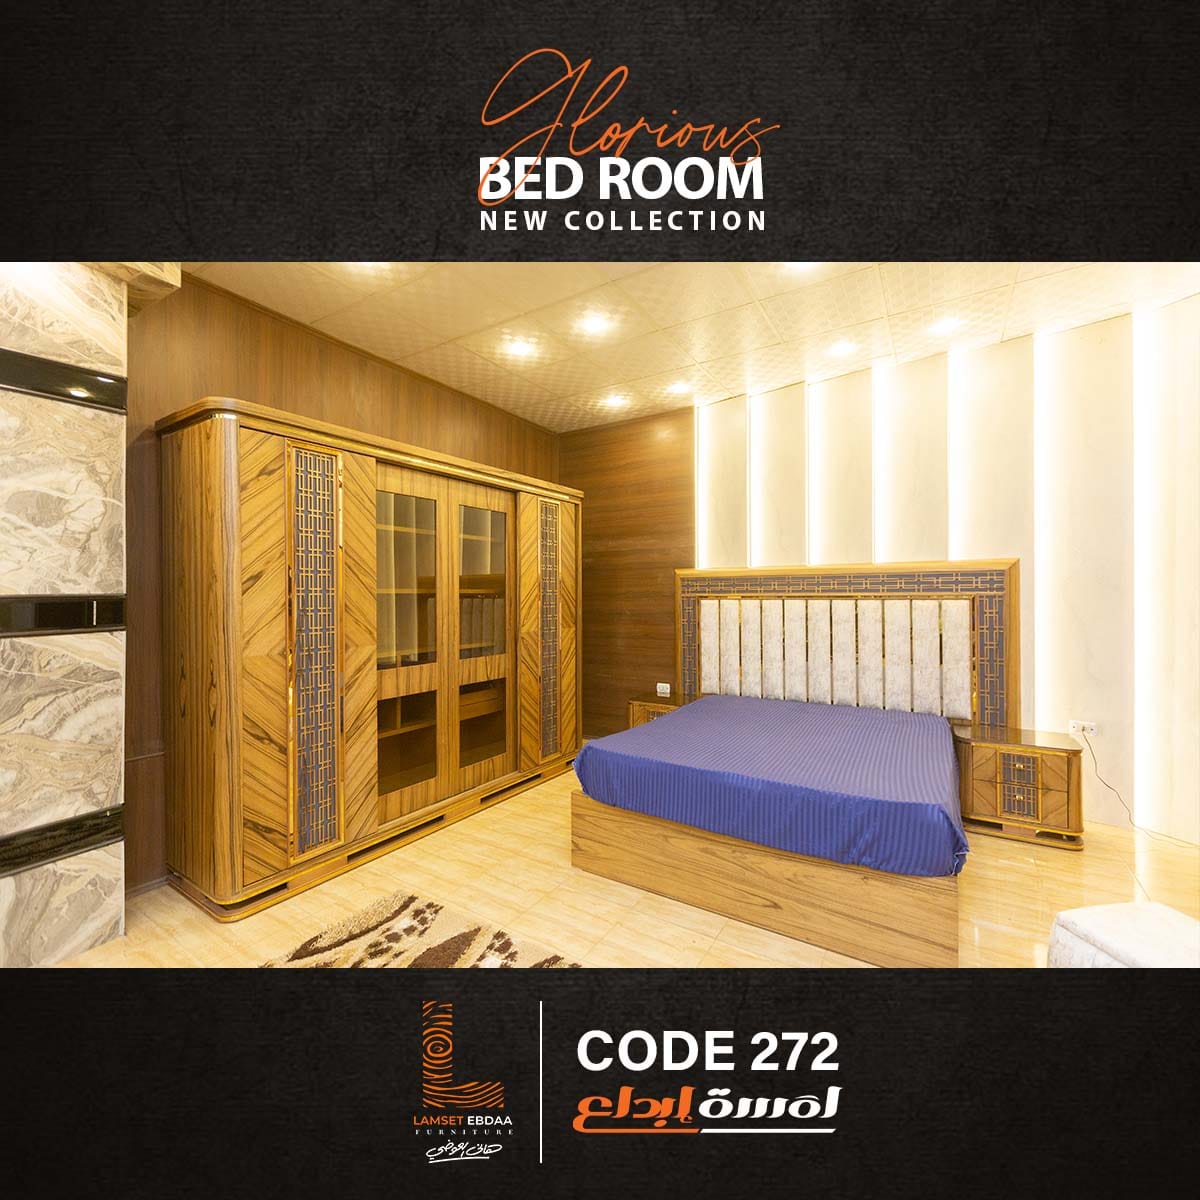  صور غرف نوم مودرن ايطالي 2025 , غرف نوم رومانسيه , من معارض لمسة ابداع , اجمل غرف النوم العصريه 